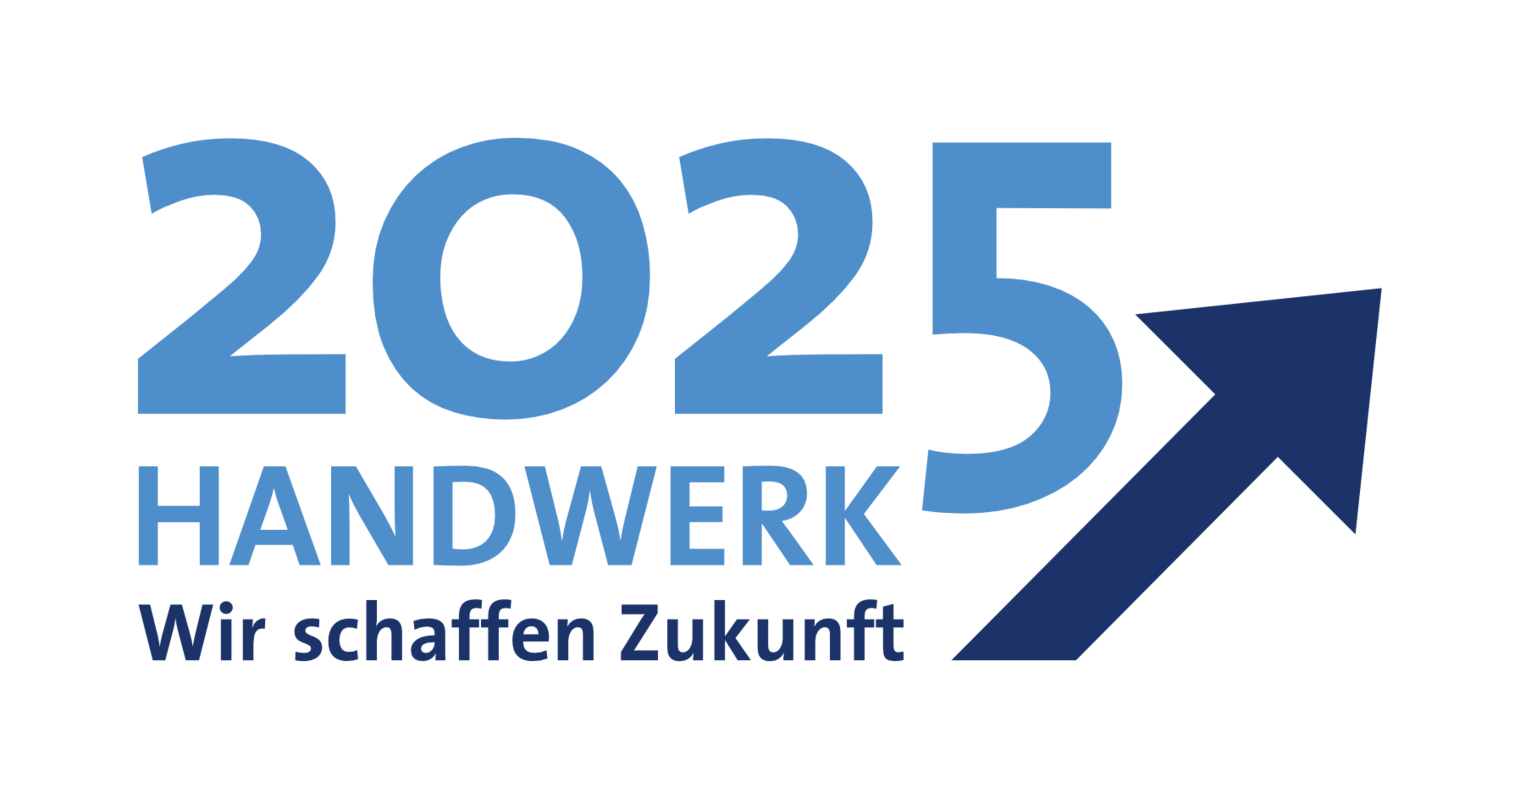 Logo Handwerk 2025 - Wir schaffen Zukunft in Blau, Pfeil nach oben